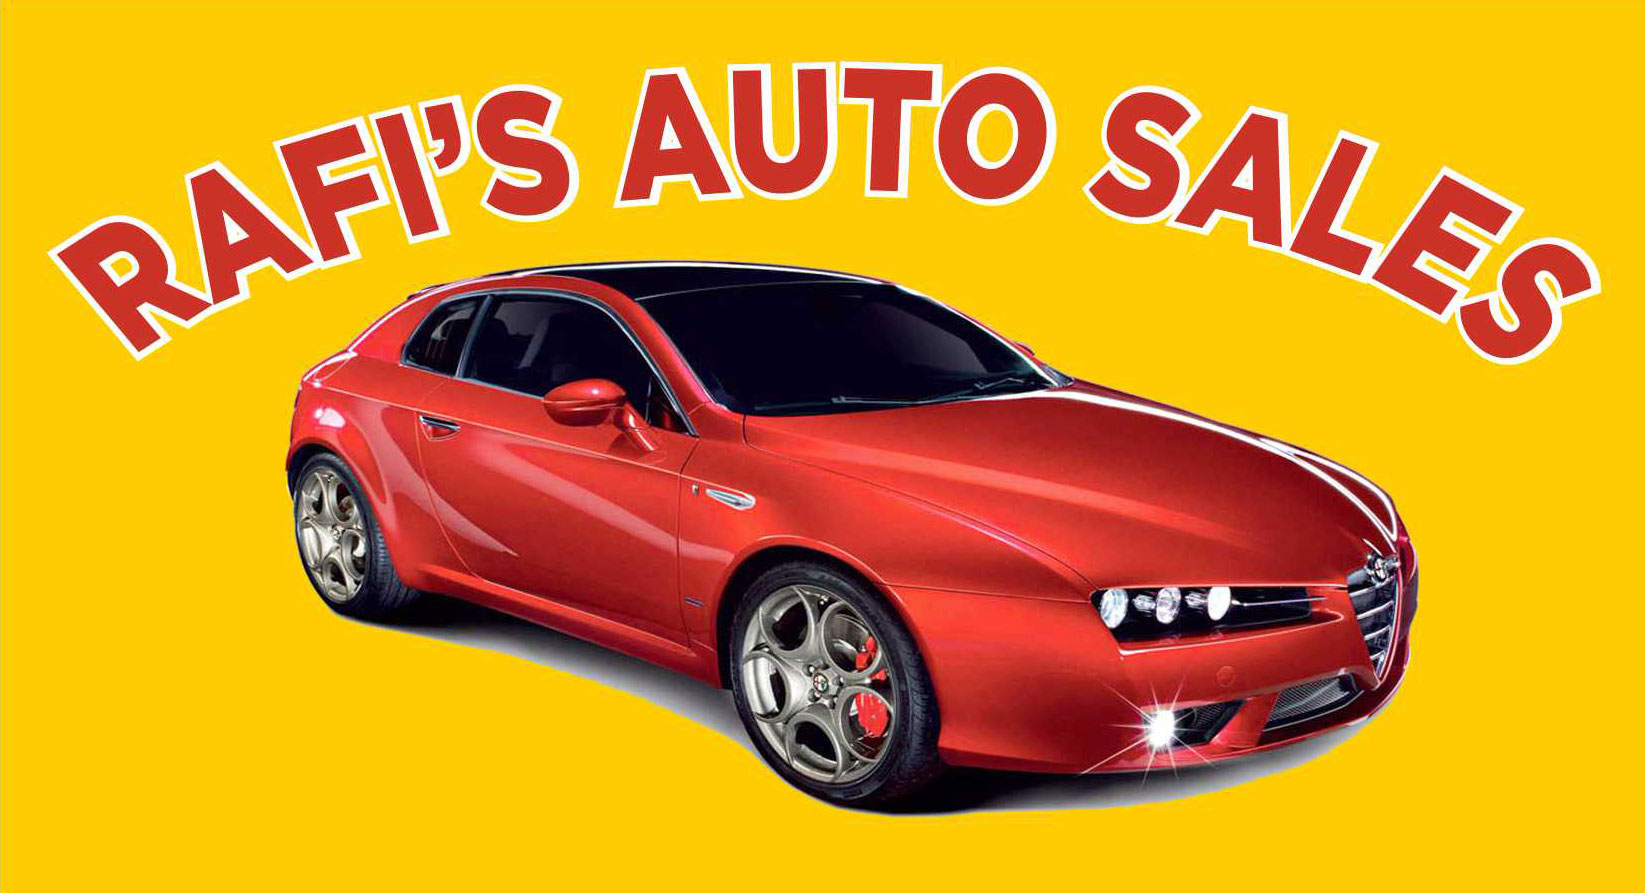 Rafi's Auto Sales